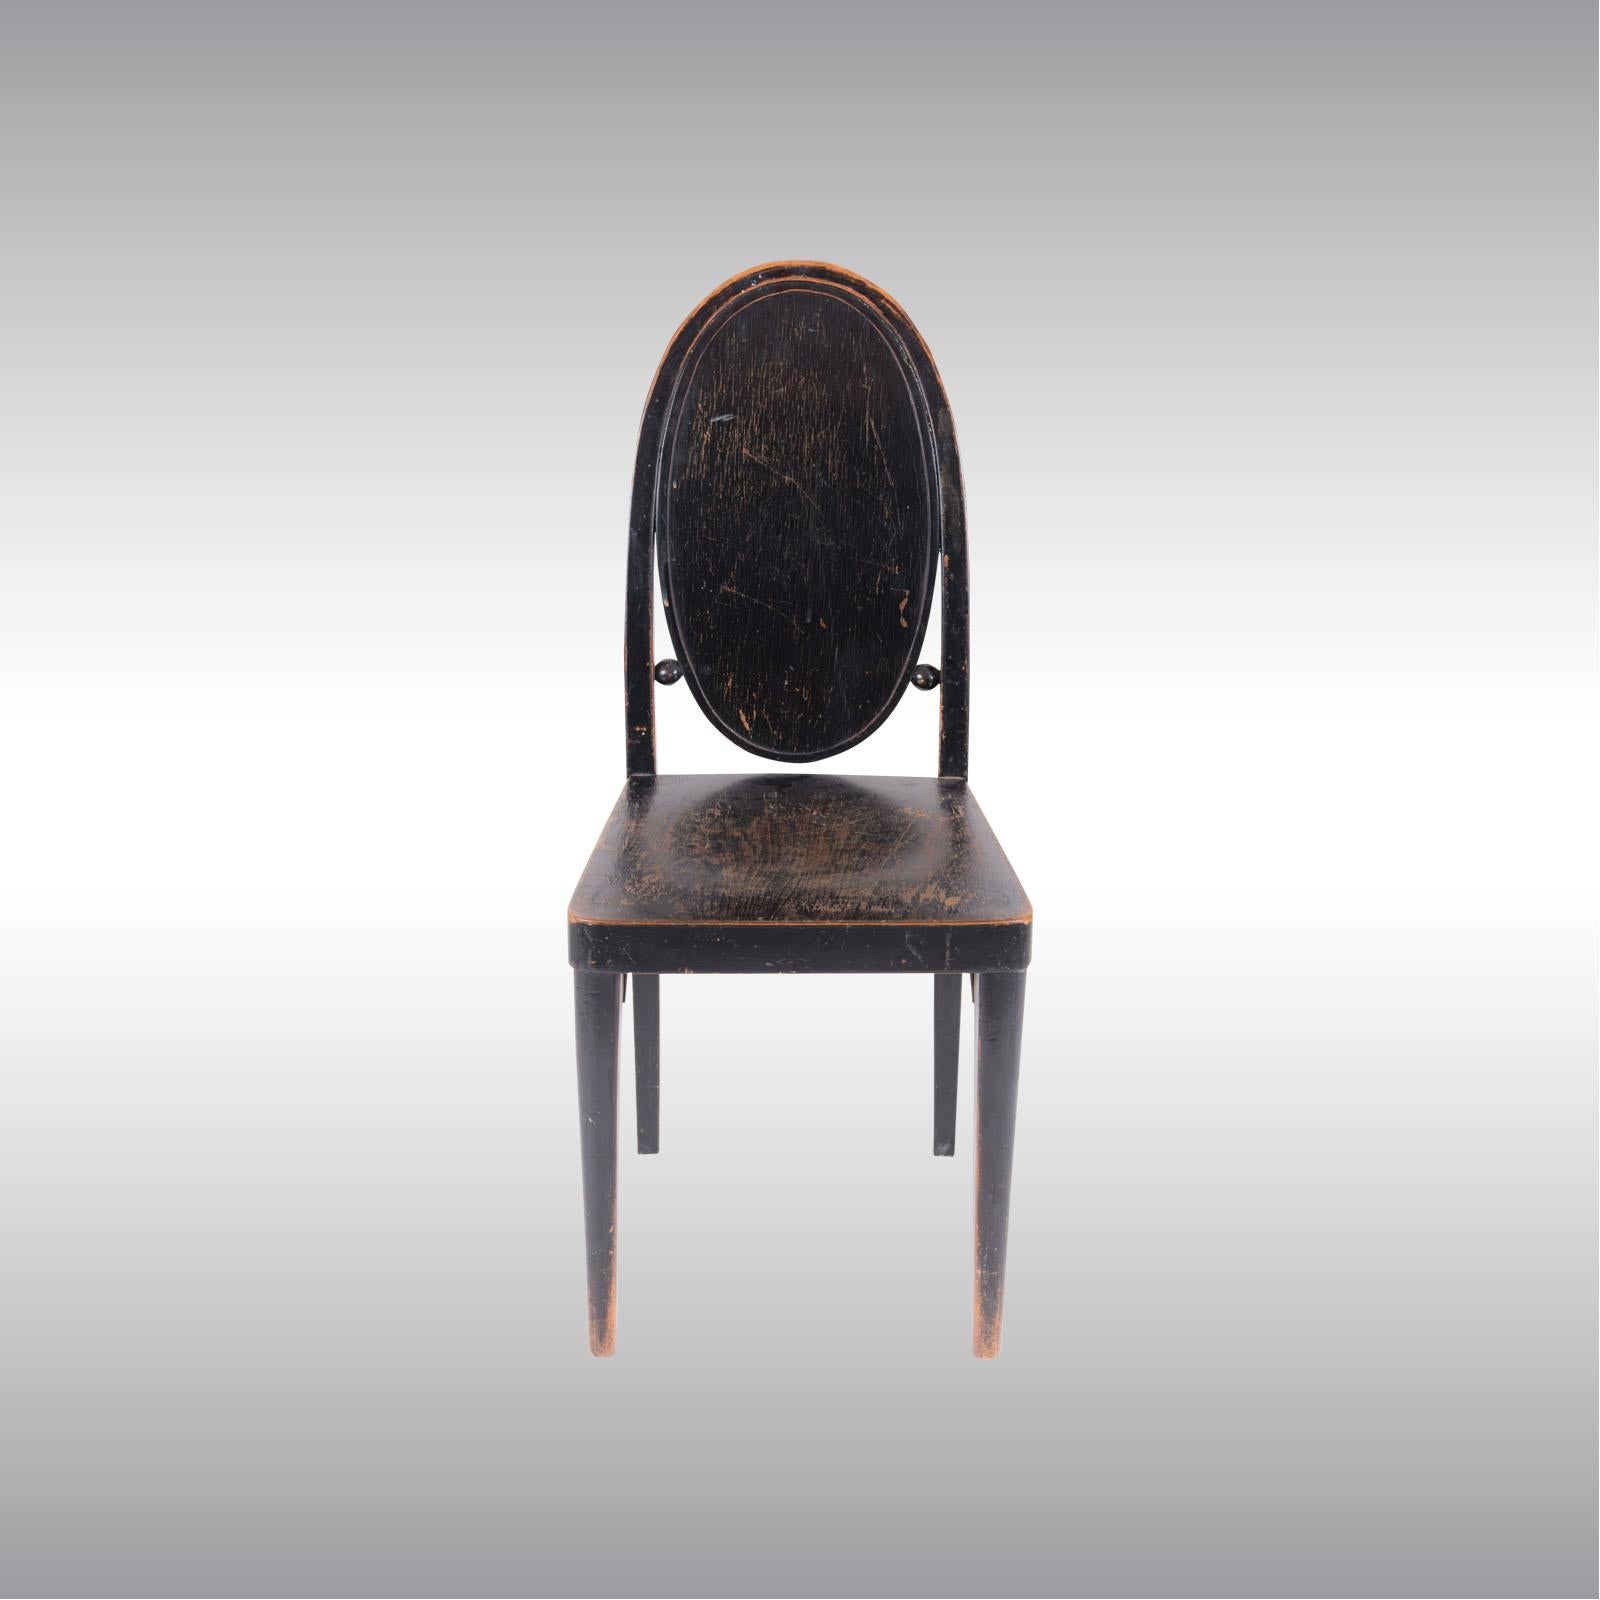 Hand-Crafted Original Otto Prutscher & Gebrueder Thonet Vienna Jugendstil Chair, 20th Century For Sale